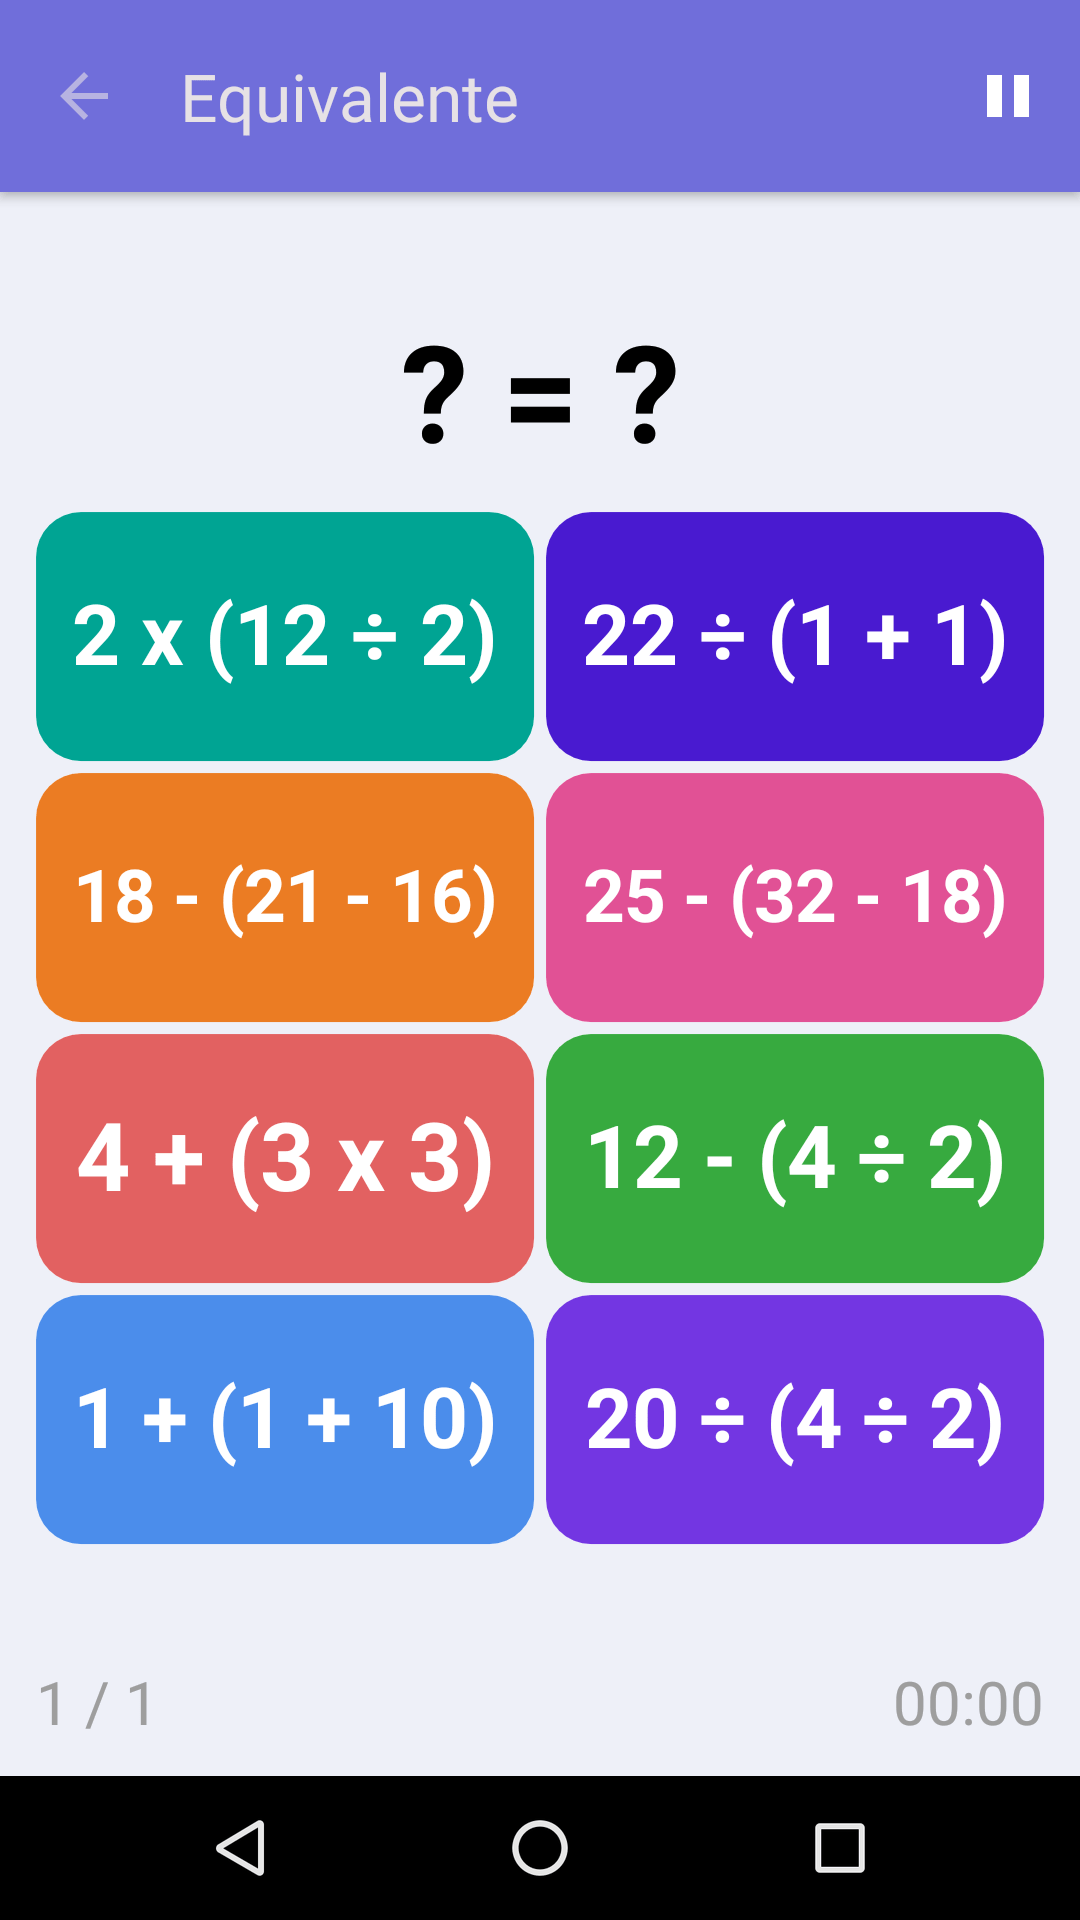 Equivalente : Juego de matemáticas gratuito para iPhone y Android